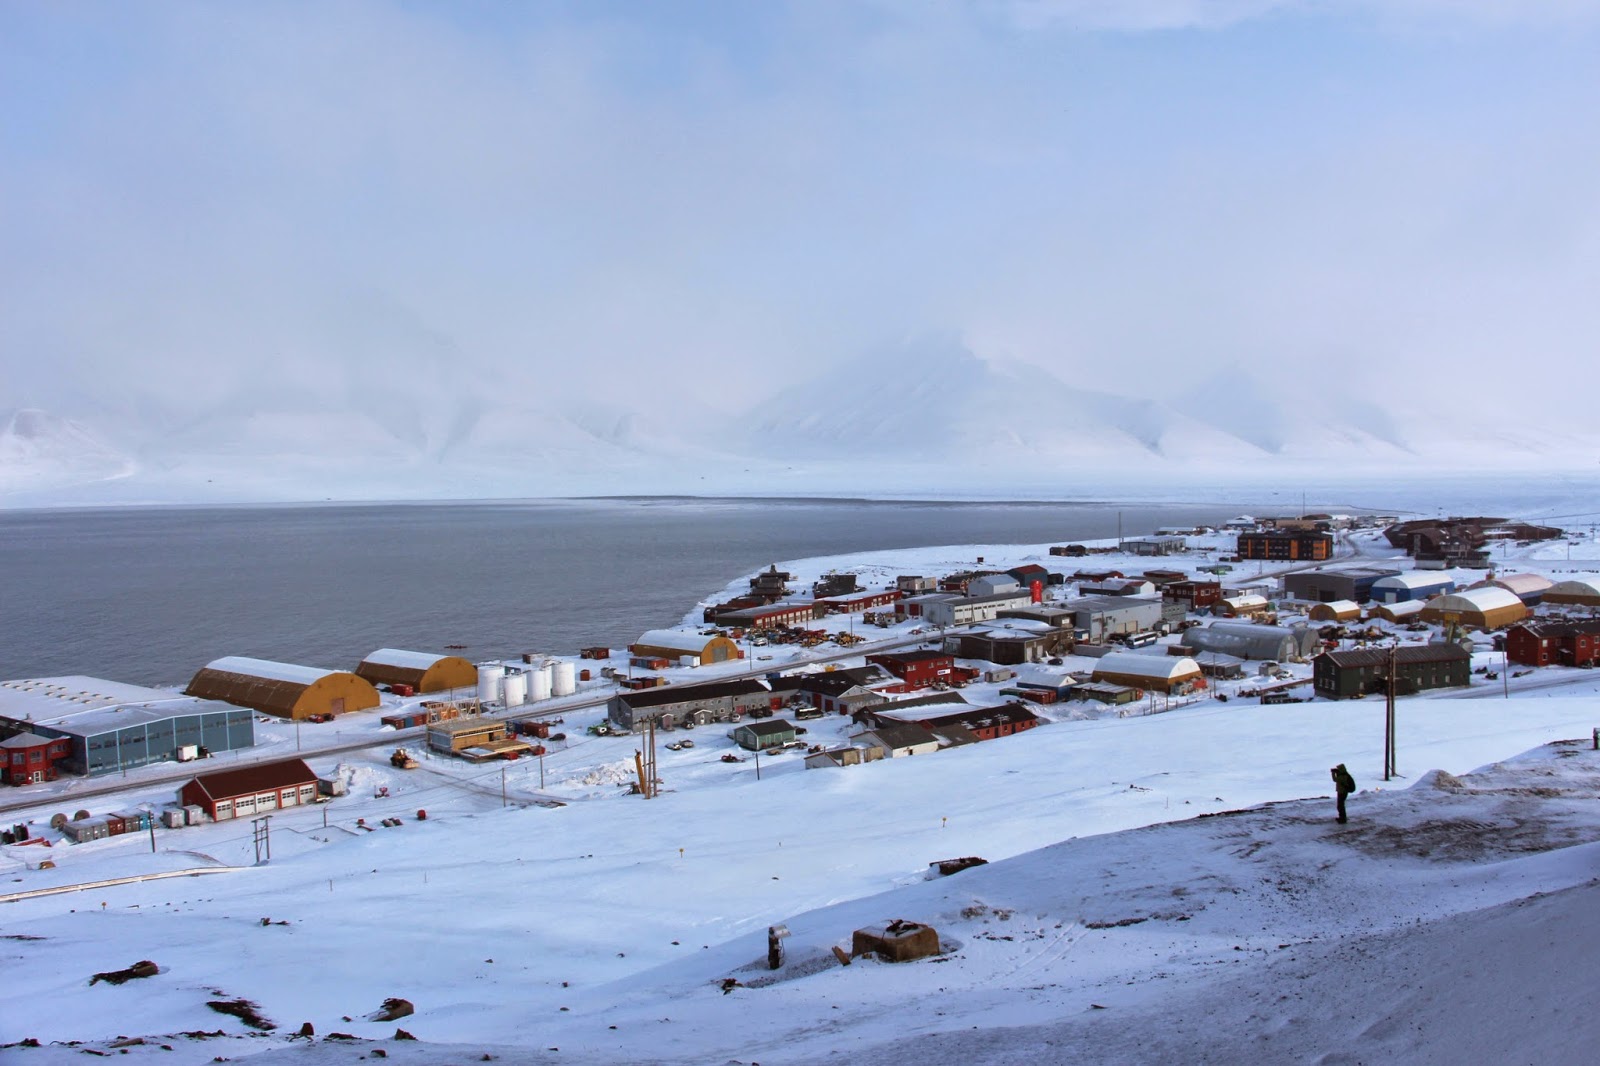 DICAS para visitar SVALBARD, a ilha acessível mais próxima do Pólo Norte | Noruega